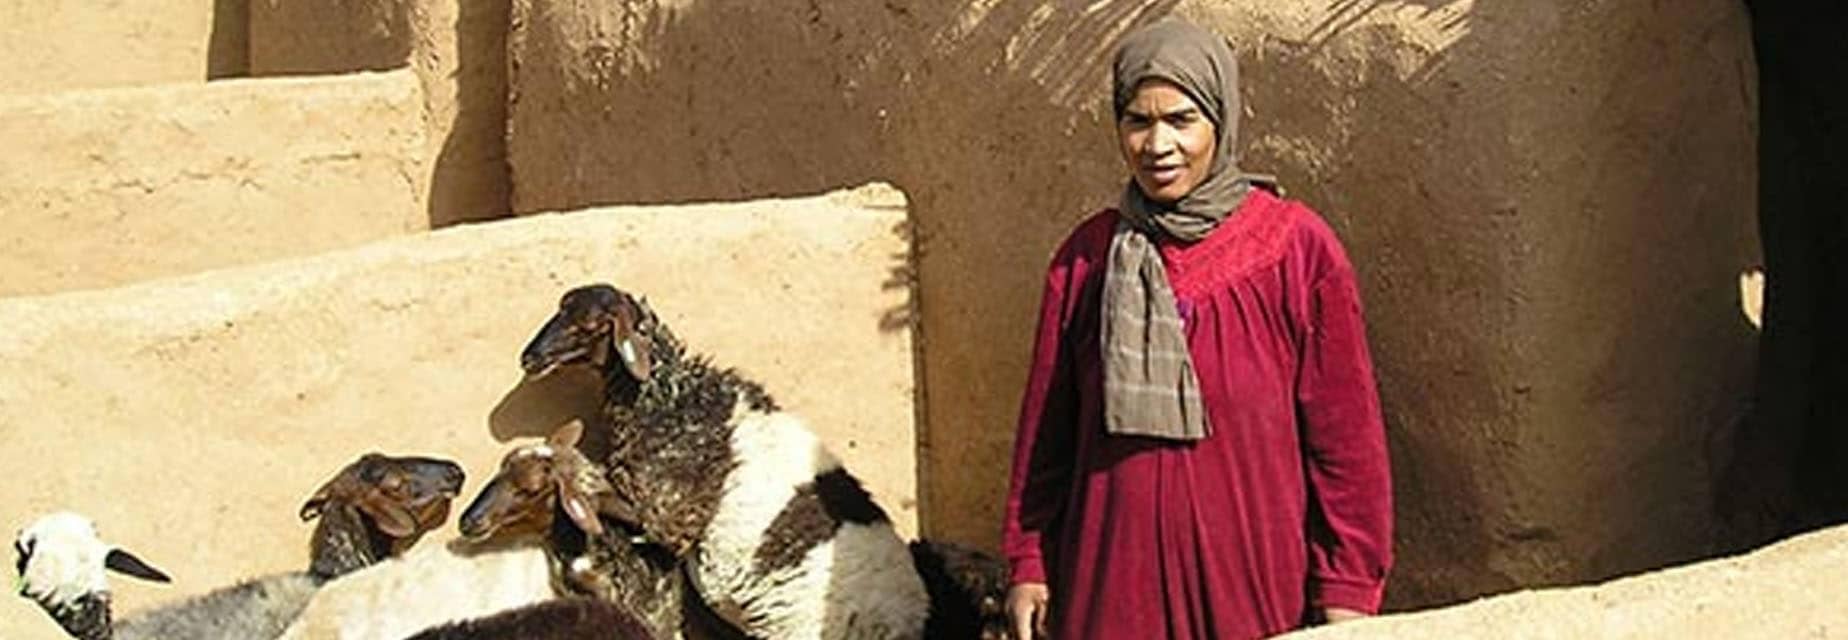 Programme d’INitiatives Entrepreneuriales de Services agricoles – Commune de Ghassate, Ouarzazate